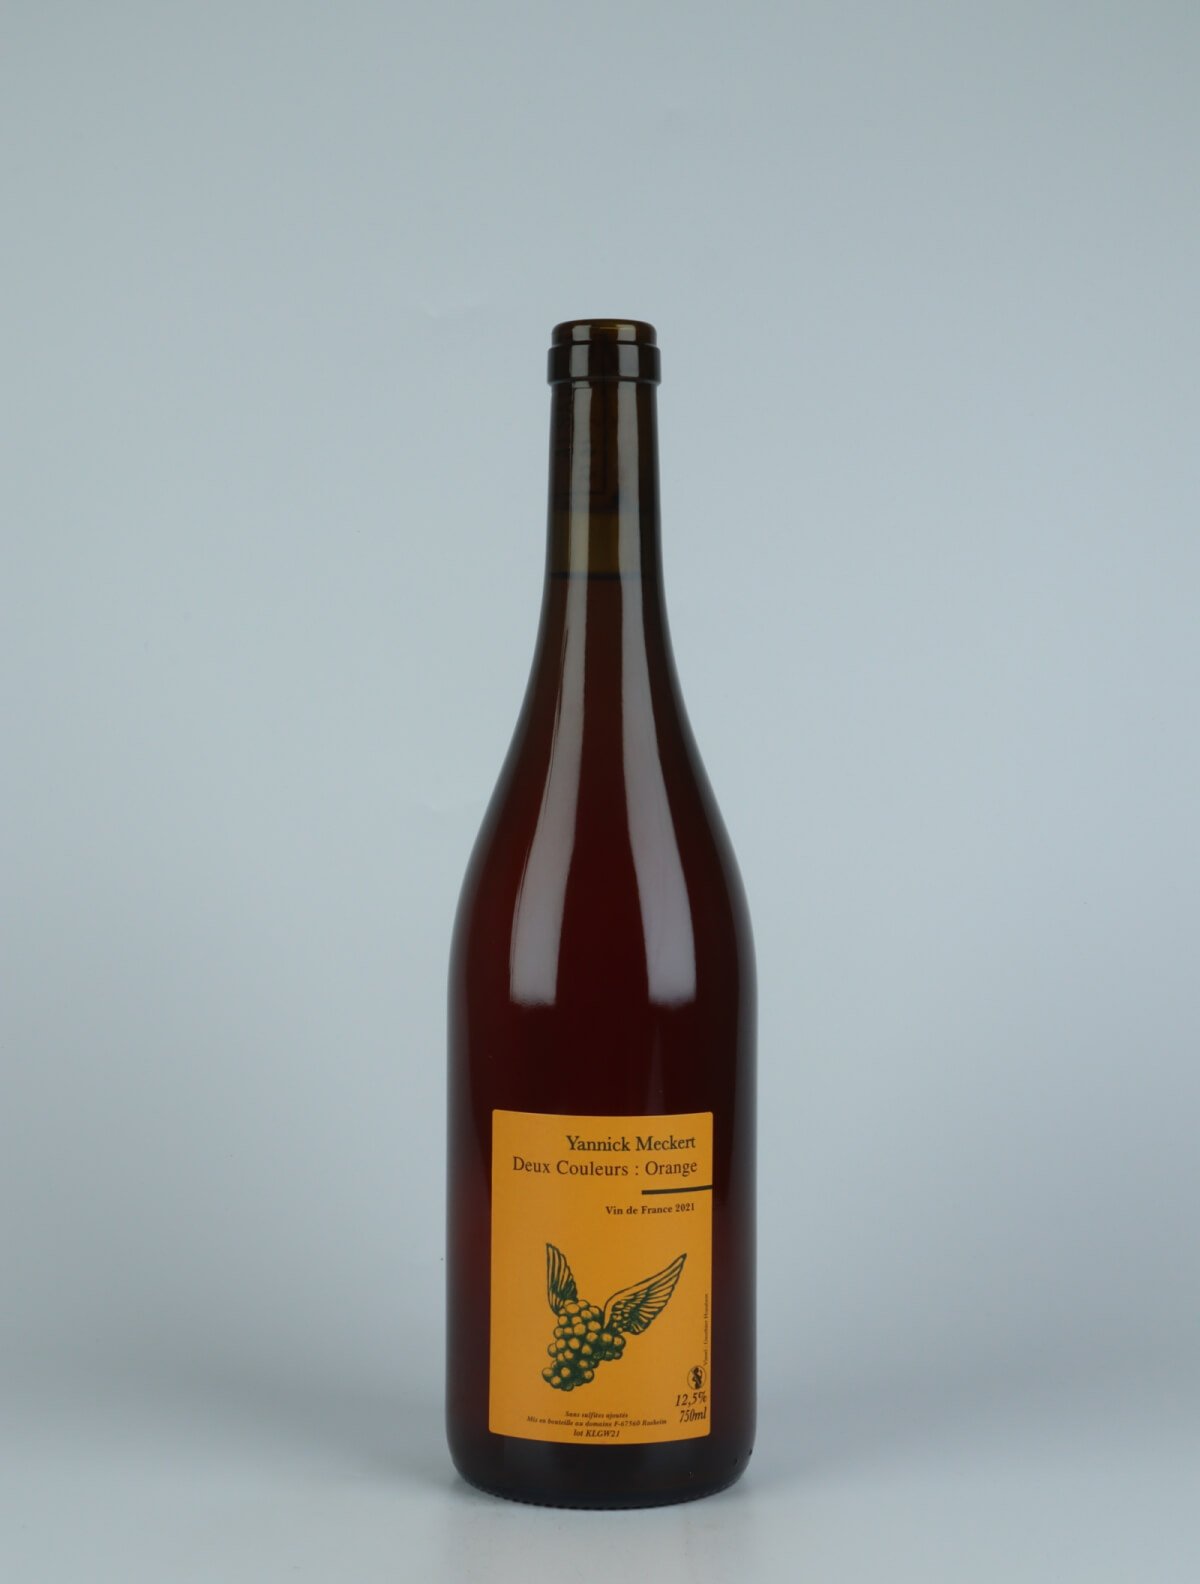 A bottle N.V. Deux Couleurs Orange (21/20) Orange wine from Yannick Meckert, Alsace in France